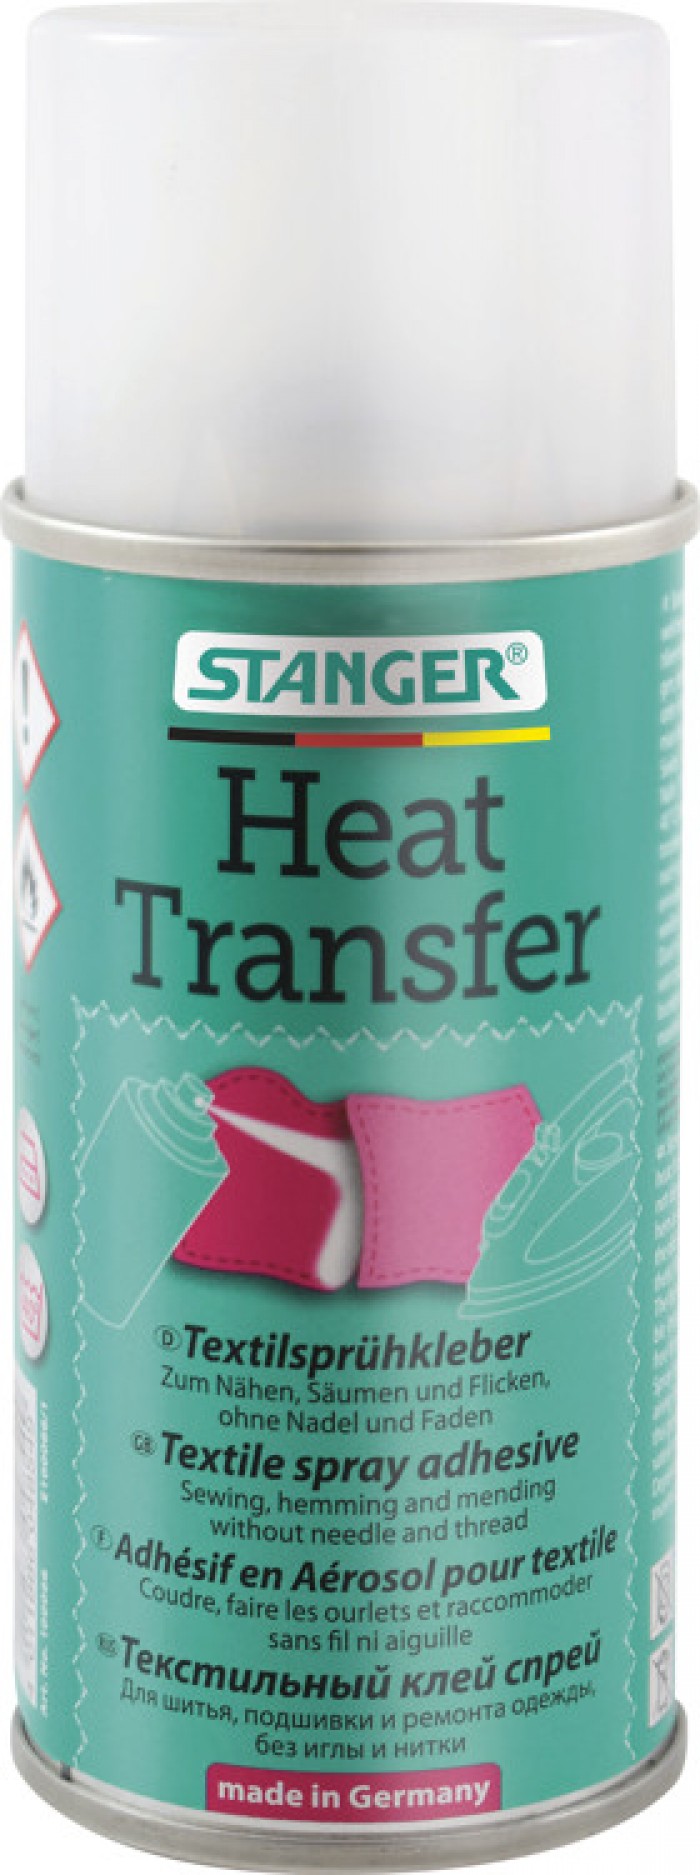 Heat Transfer Textil Spray Lijm No. 66 150 ml